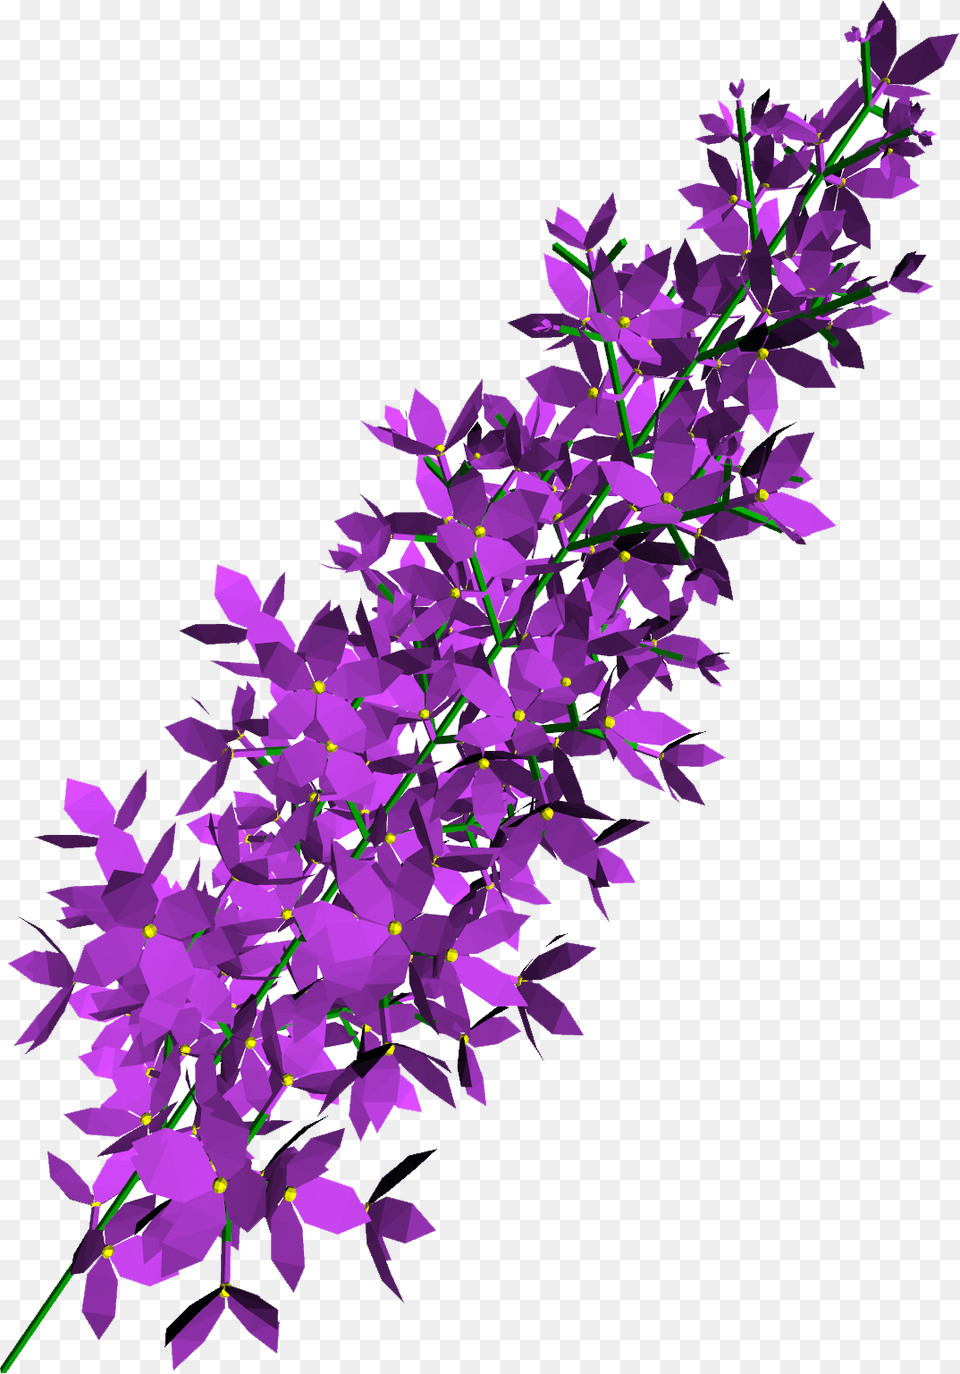 Lilac, Flower, Plant, Purple, Lavender Png Image